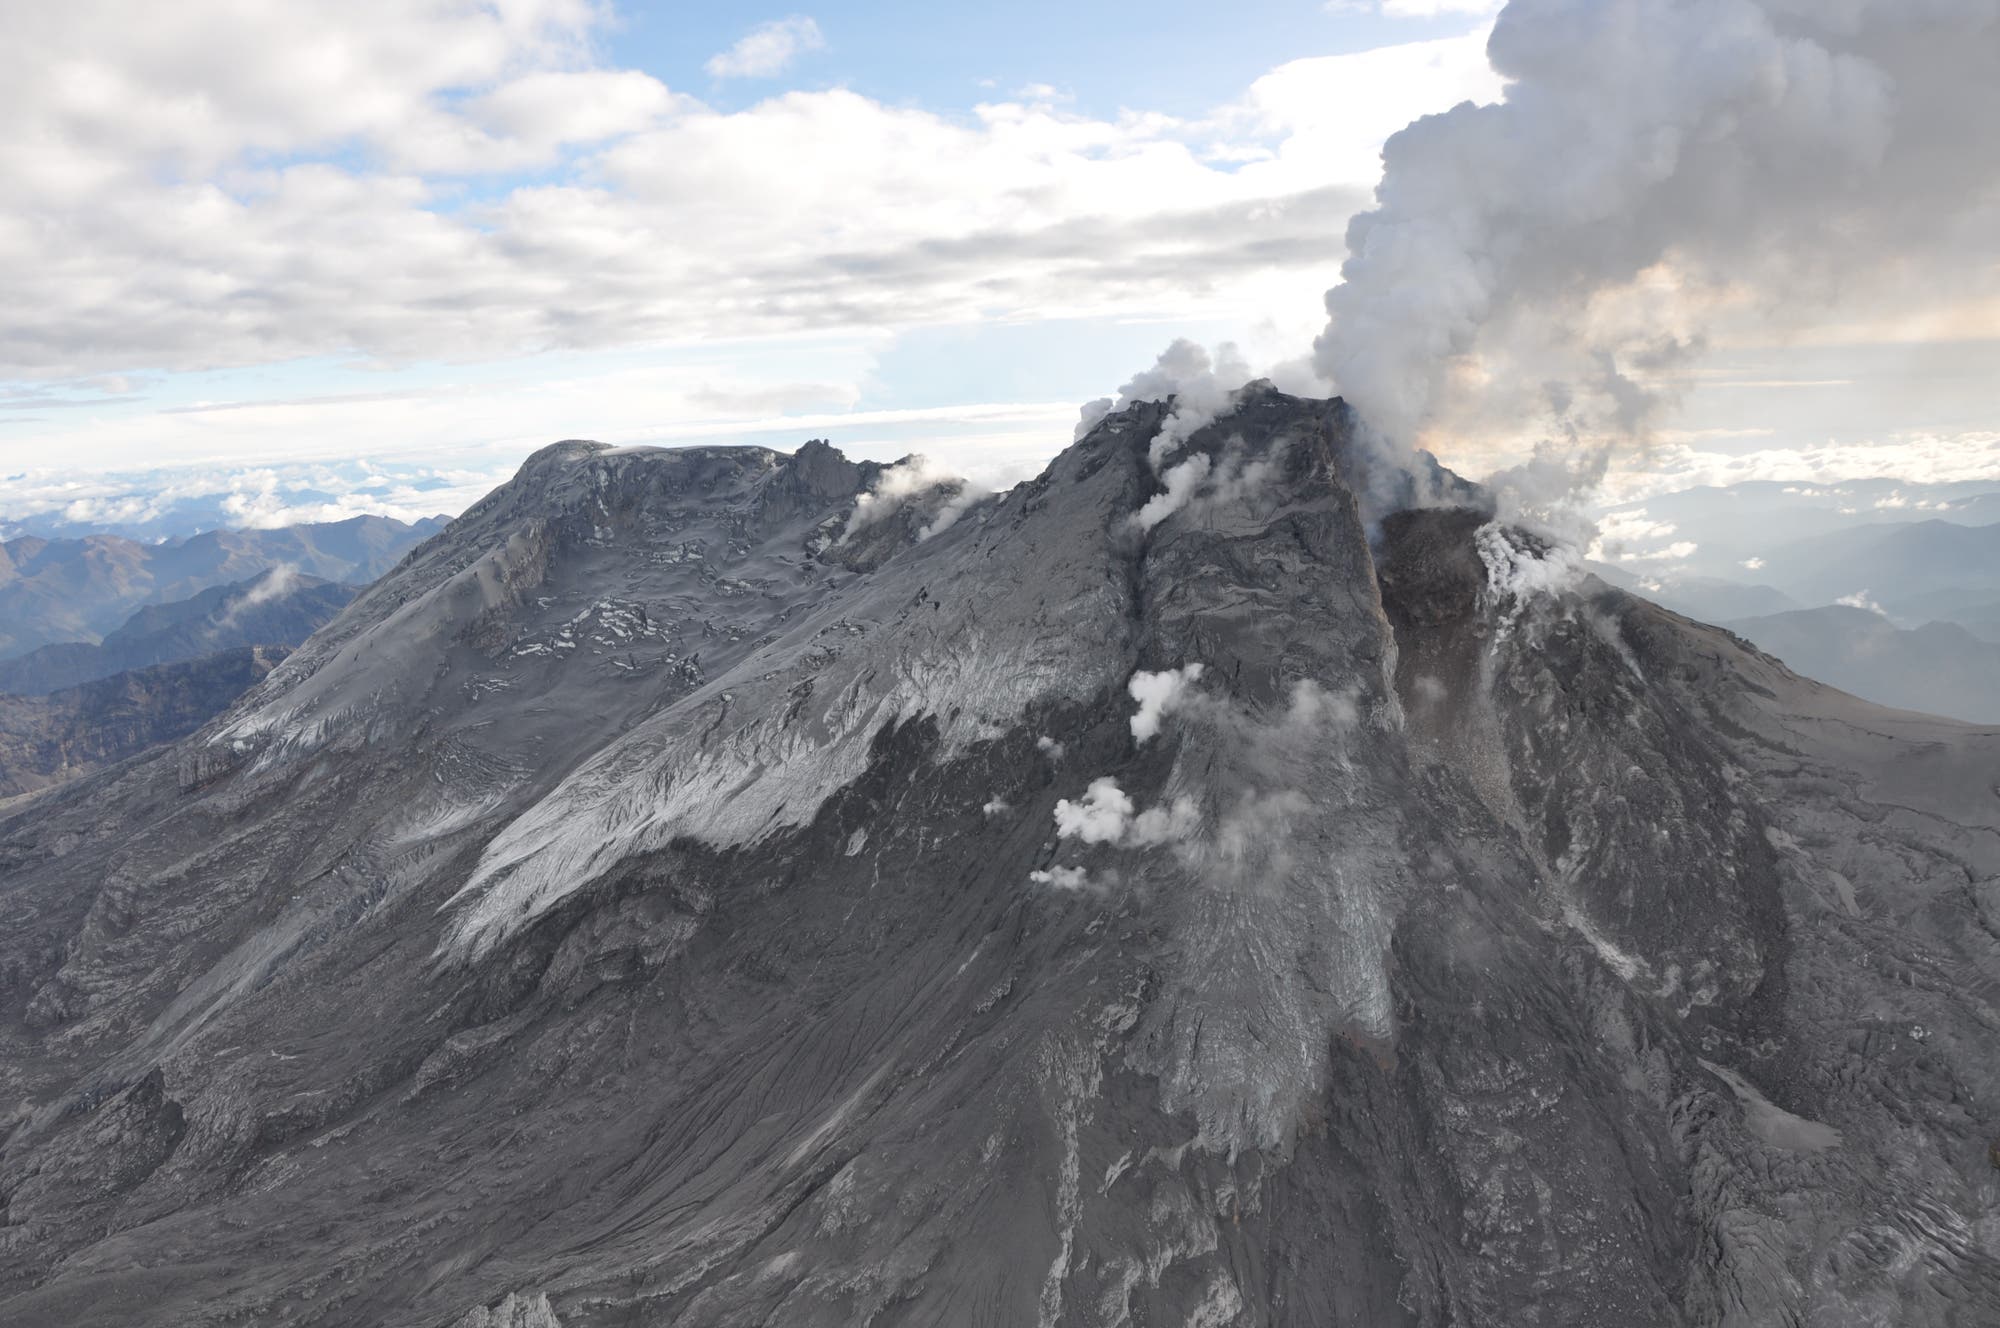 Der Vulkan Nevado del Huila in Kolumbien